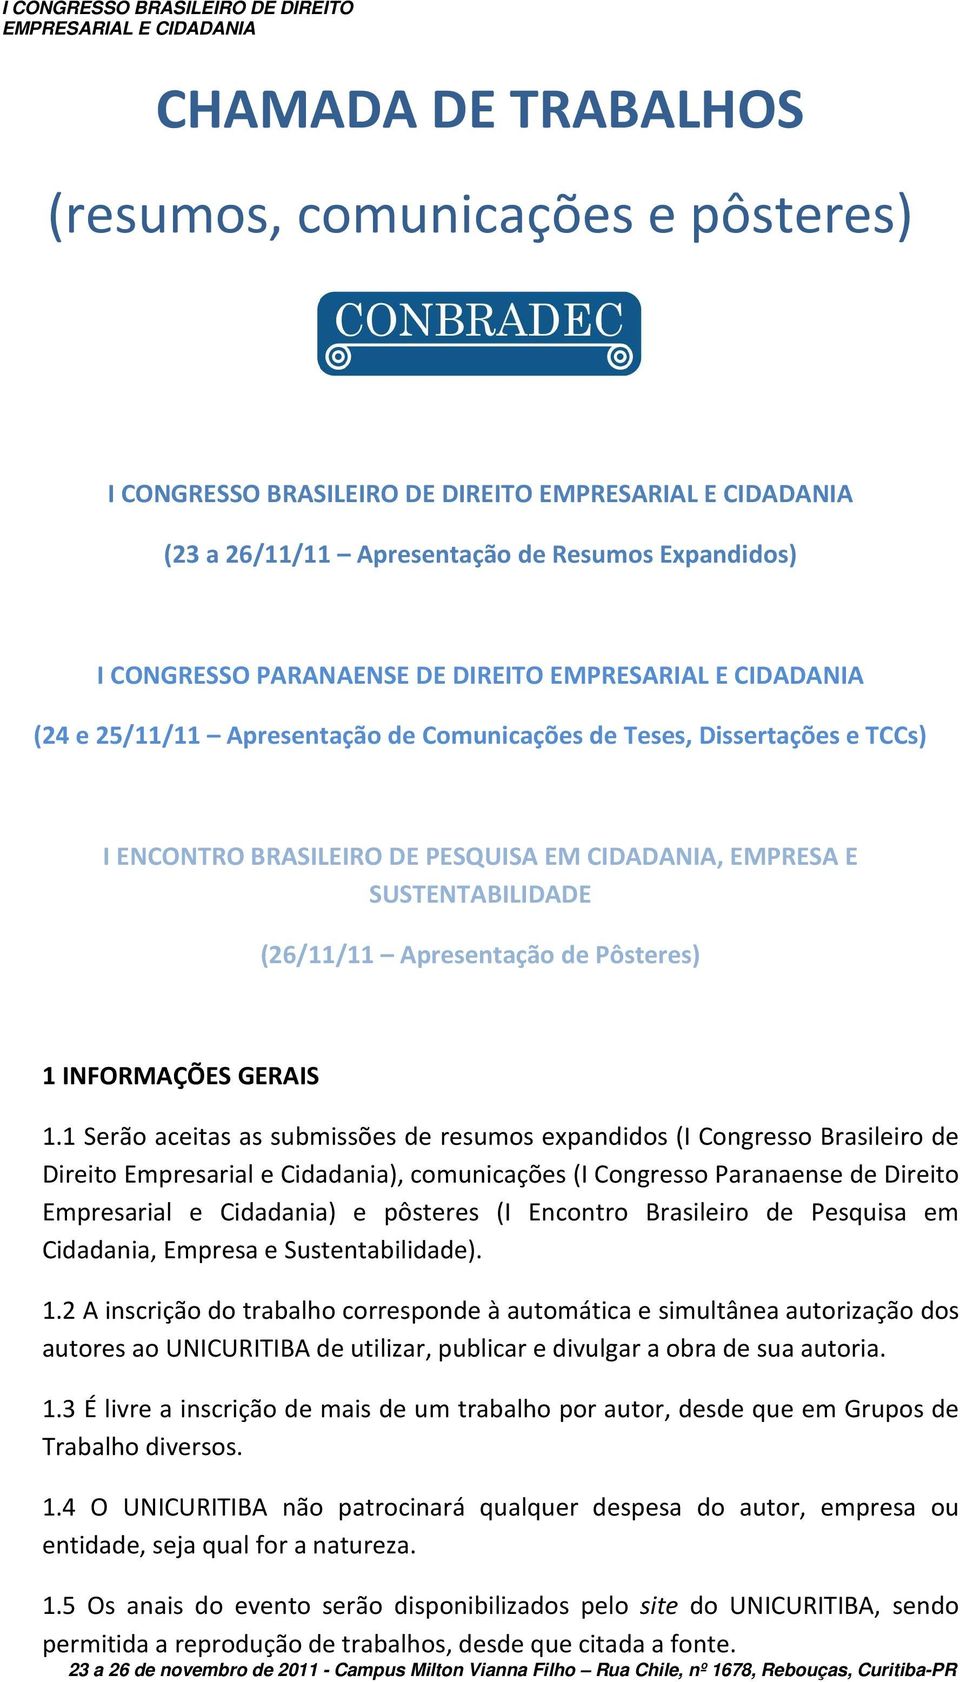 1 Serão aceitas as submissões de resumos expandidos (I Congresso Brasileiro de Direito Empresarial e Cidadania), comunicações (I Congresso Paranaense de Direito Empresarial e Cidadania) e pôsteres (I